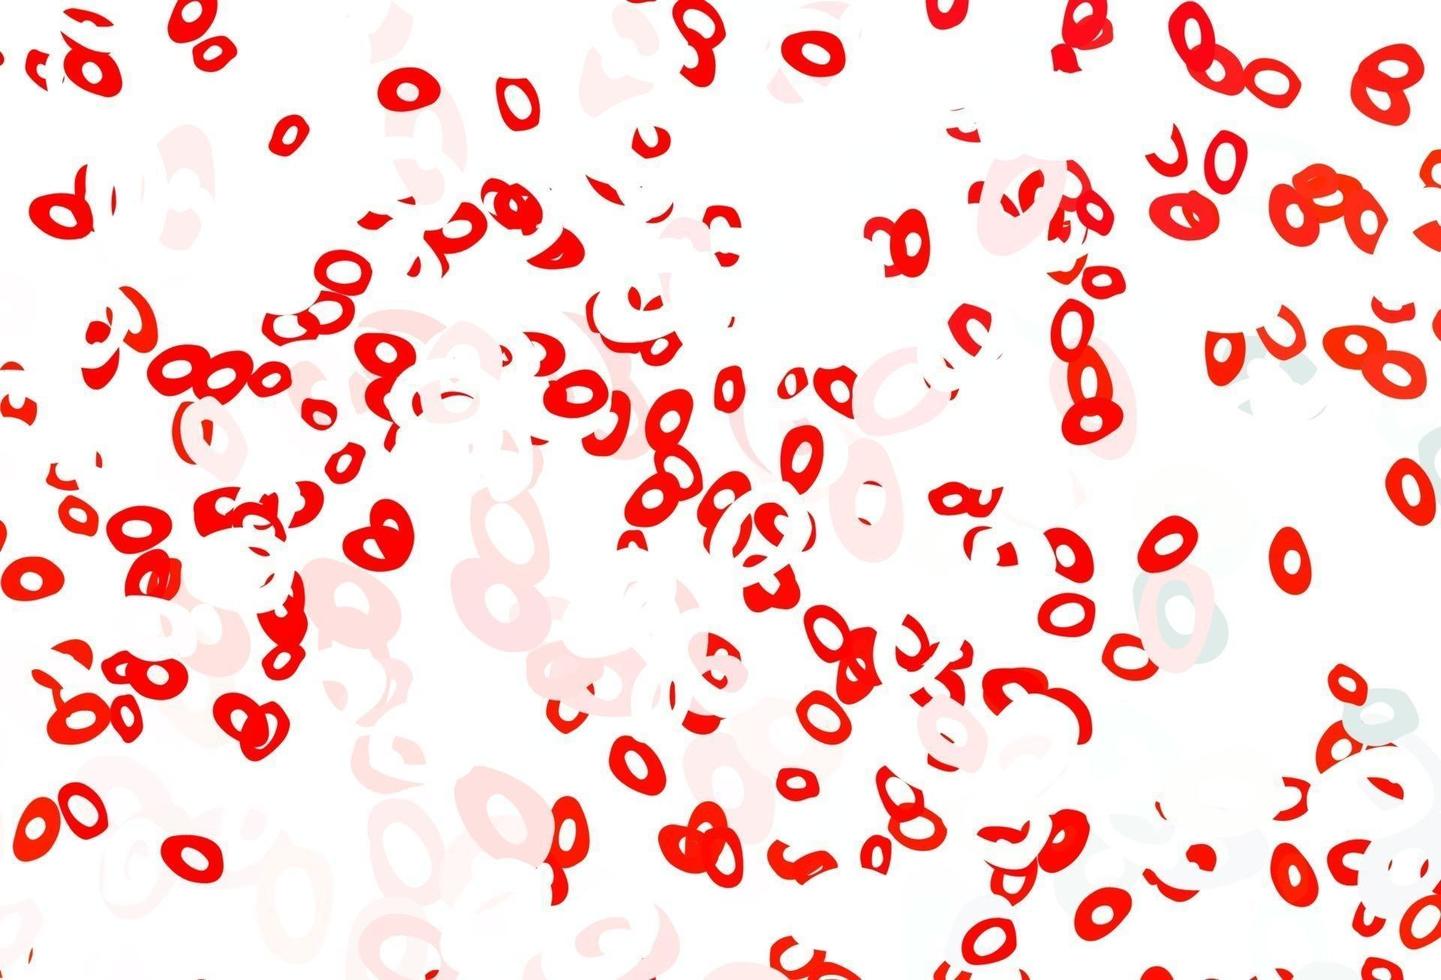 telón de fondo de vector rojo claro con puntos.